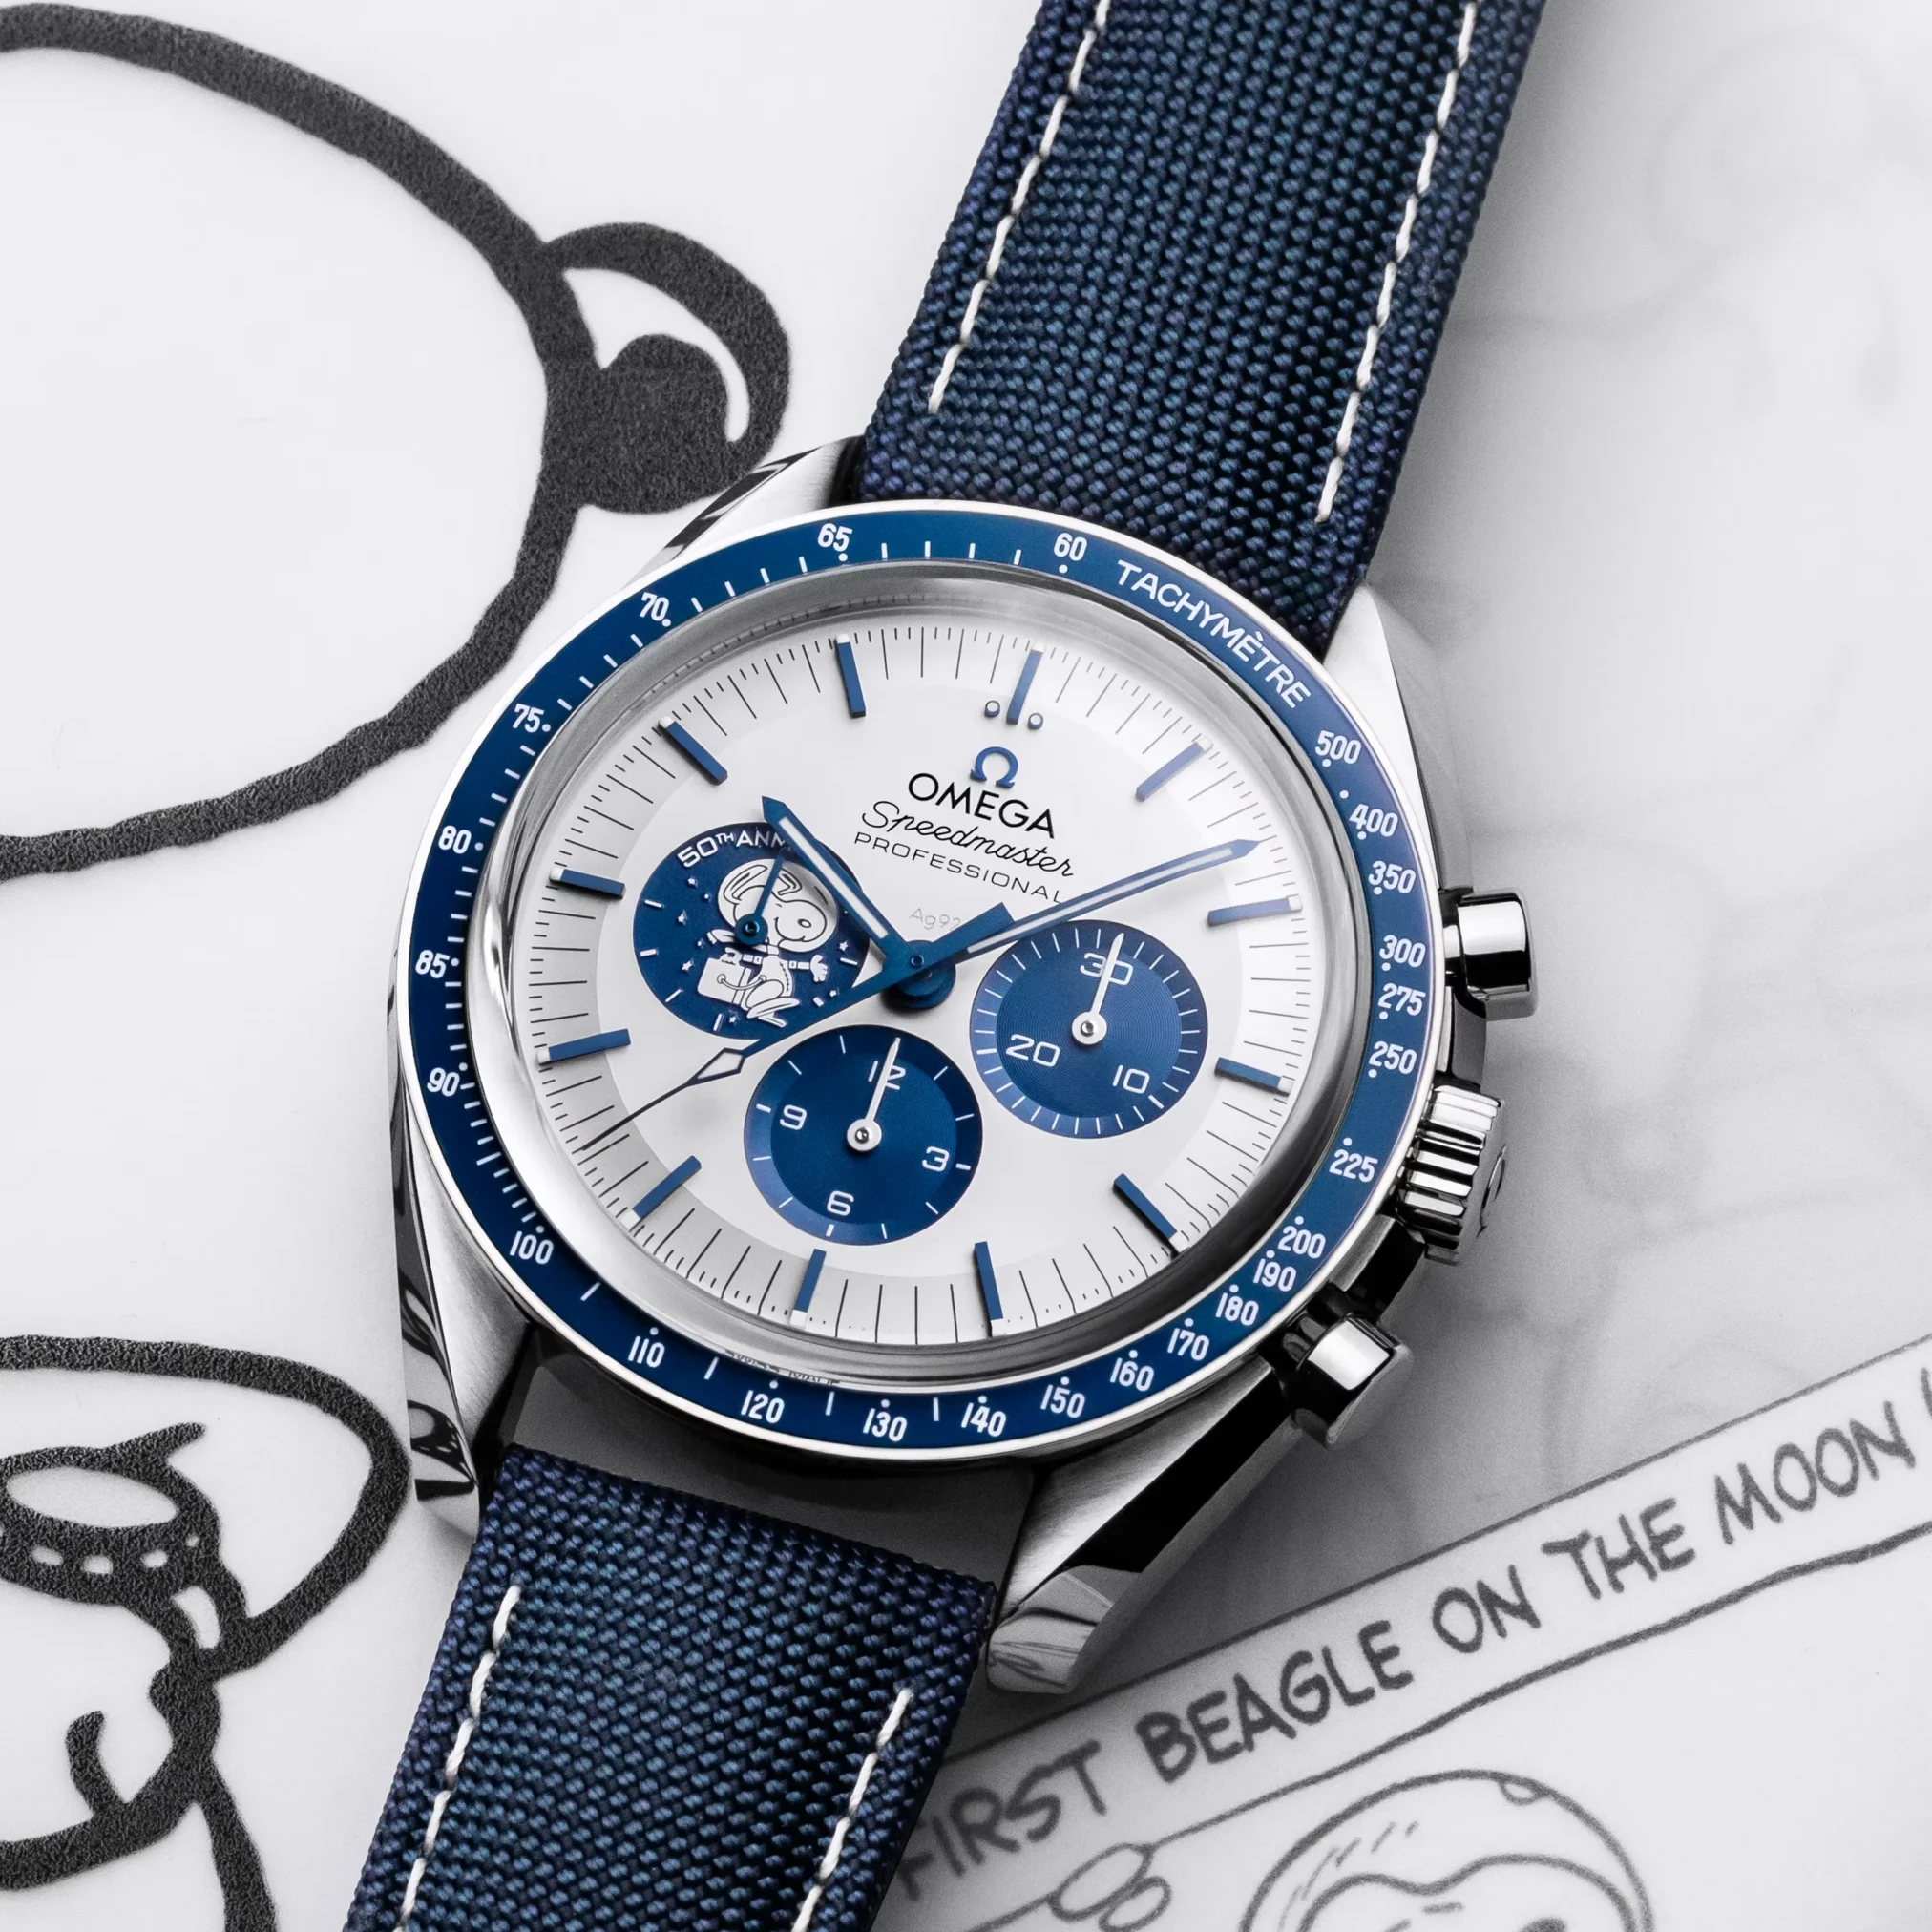 Đồng hồ Omega Speedmaster Anniversary Series "Silver Snoopy Award" Limited Edition 310.32.42.50.02.001 mặt số màu trắng xanh. Dây đeo bằng vải dù. Thân vỏ bằng thép.